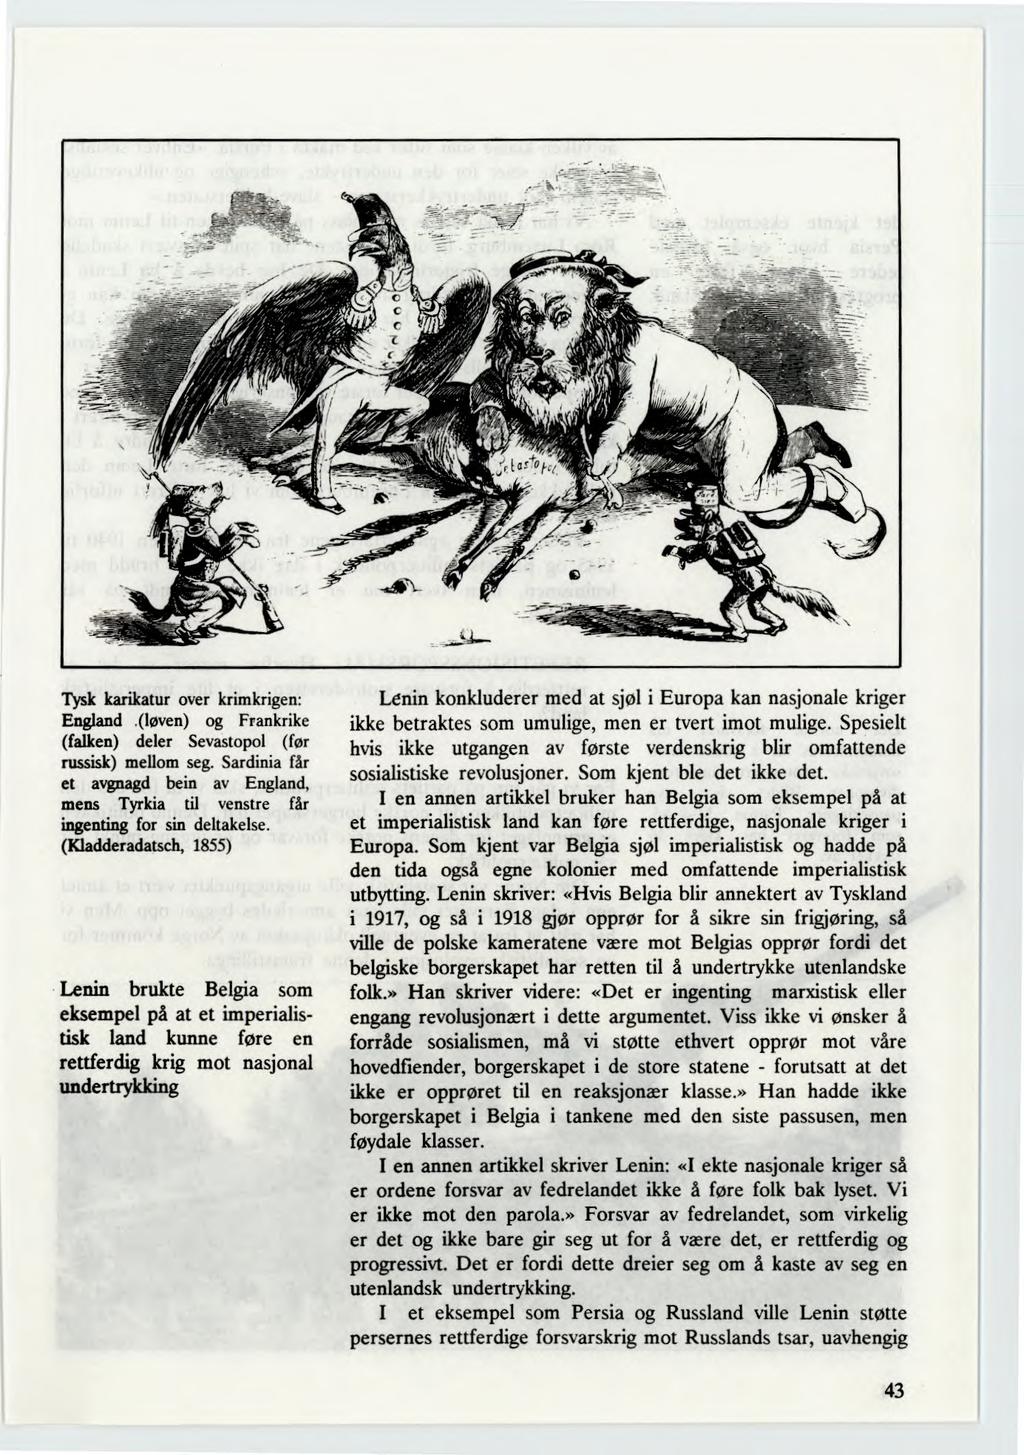 Tysk karikatur over krimkrigen: England.(løven) og Frankrike (falken) deler Sevastopol (før russisk) mellom seg.